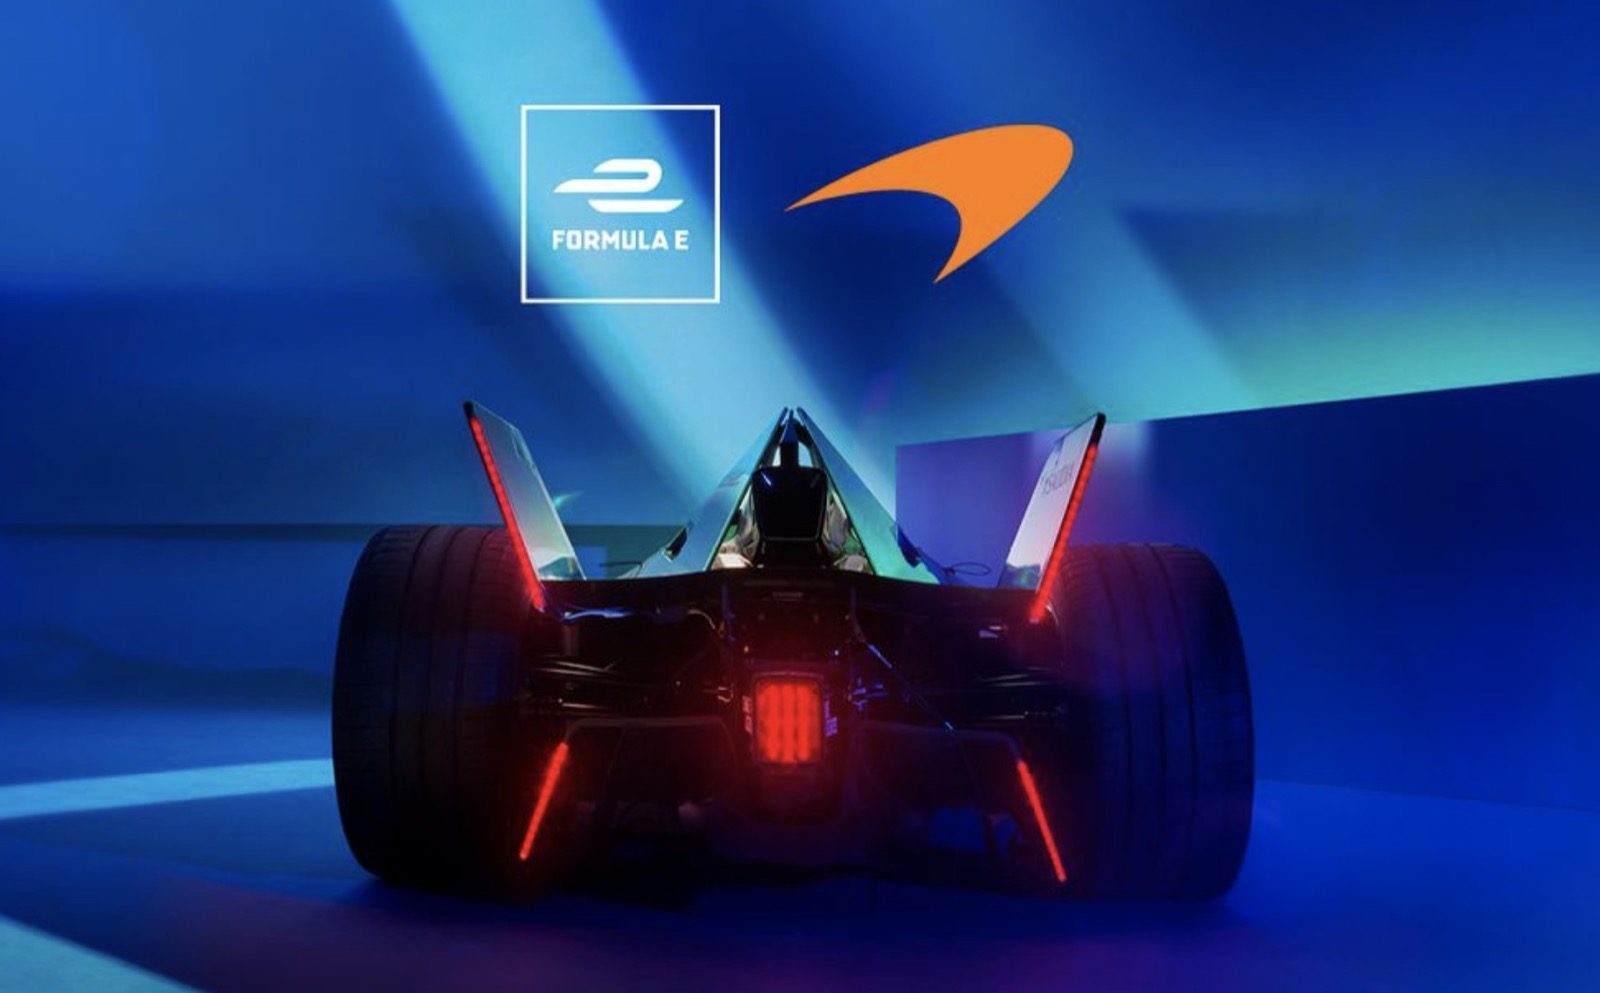 McLaren met Nissan motoren